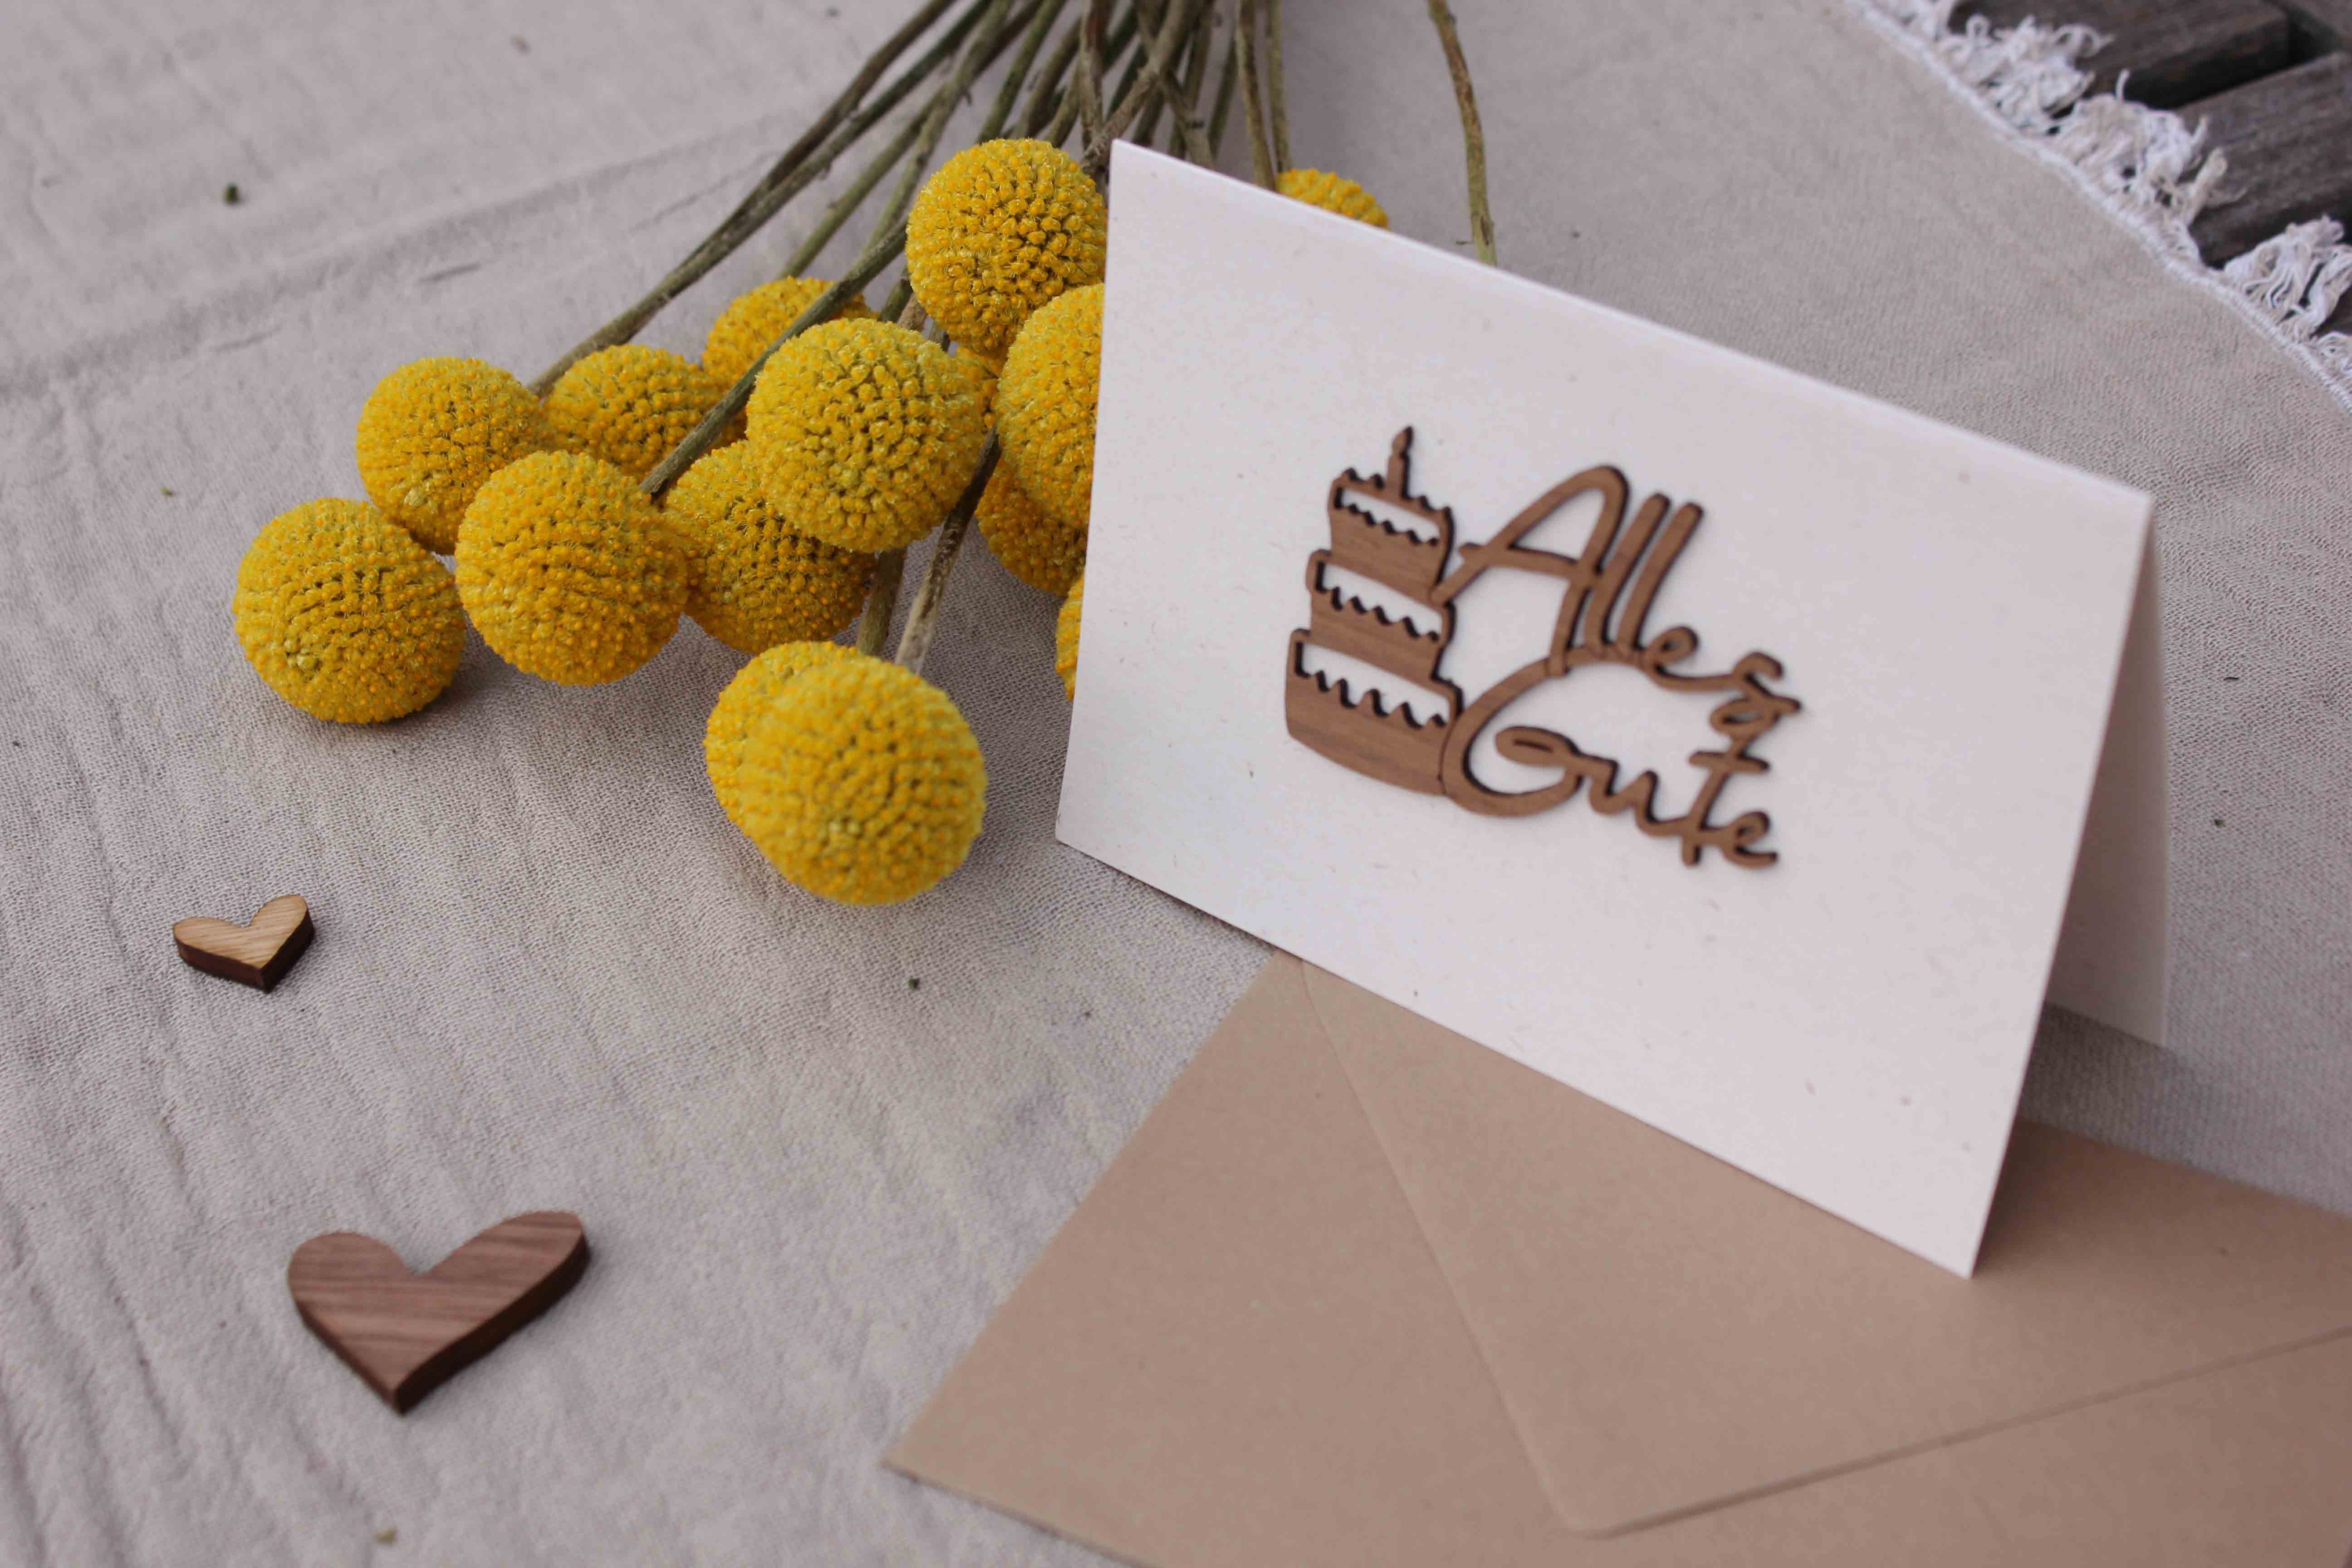 Holzgrusskarten - Papierkarte mit Schriftzug "Alles Gute" aus Nuss, Geburtstagstorte, Geburtstagskarte